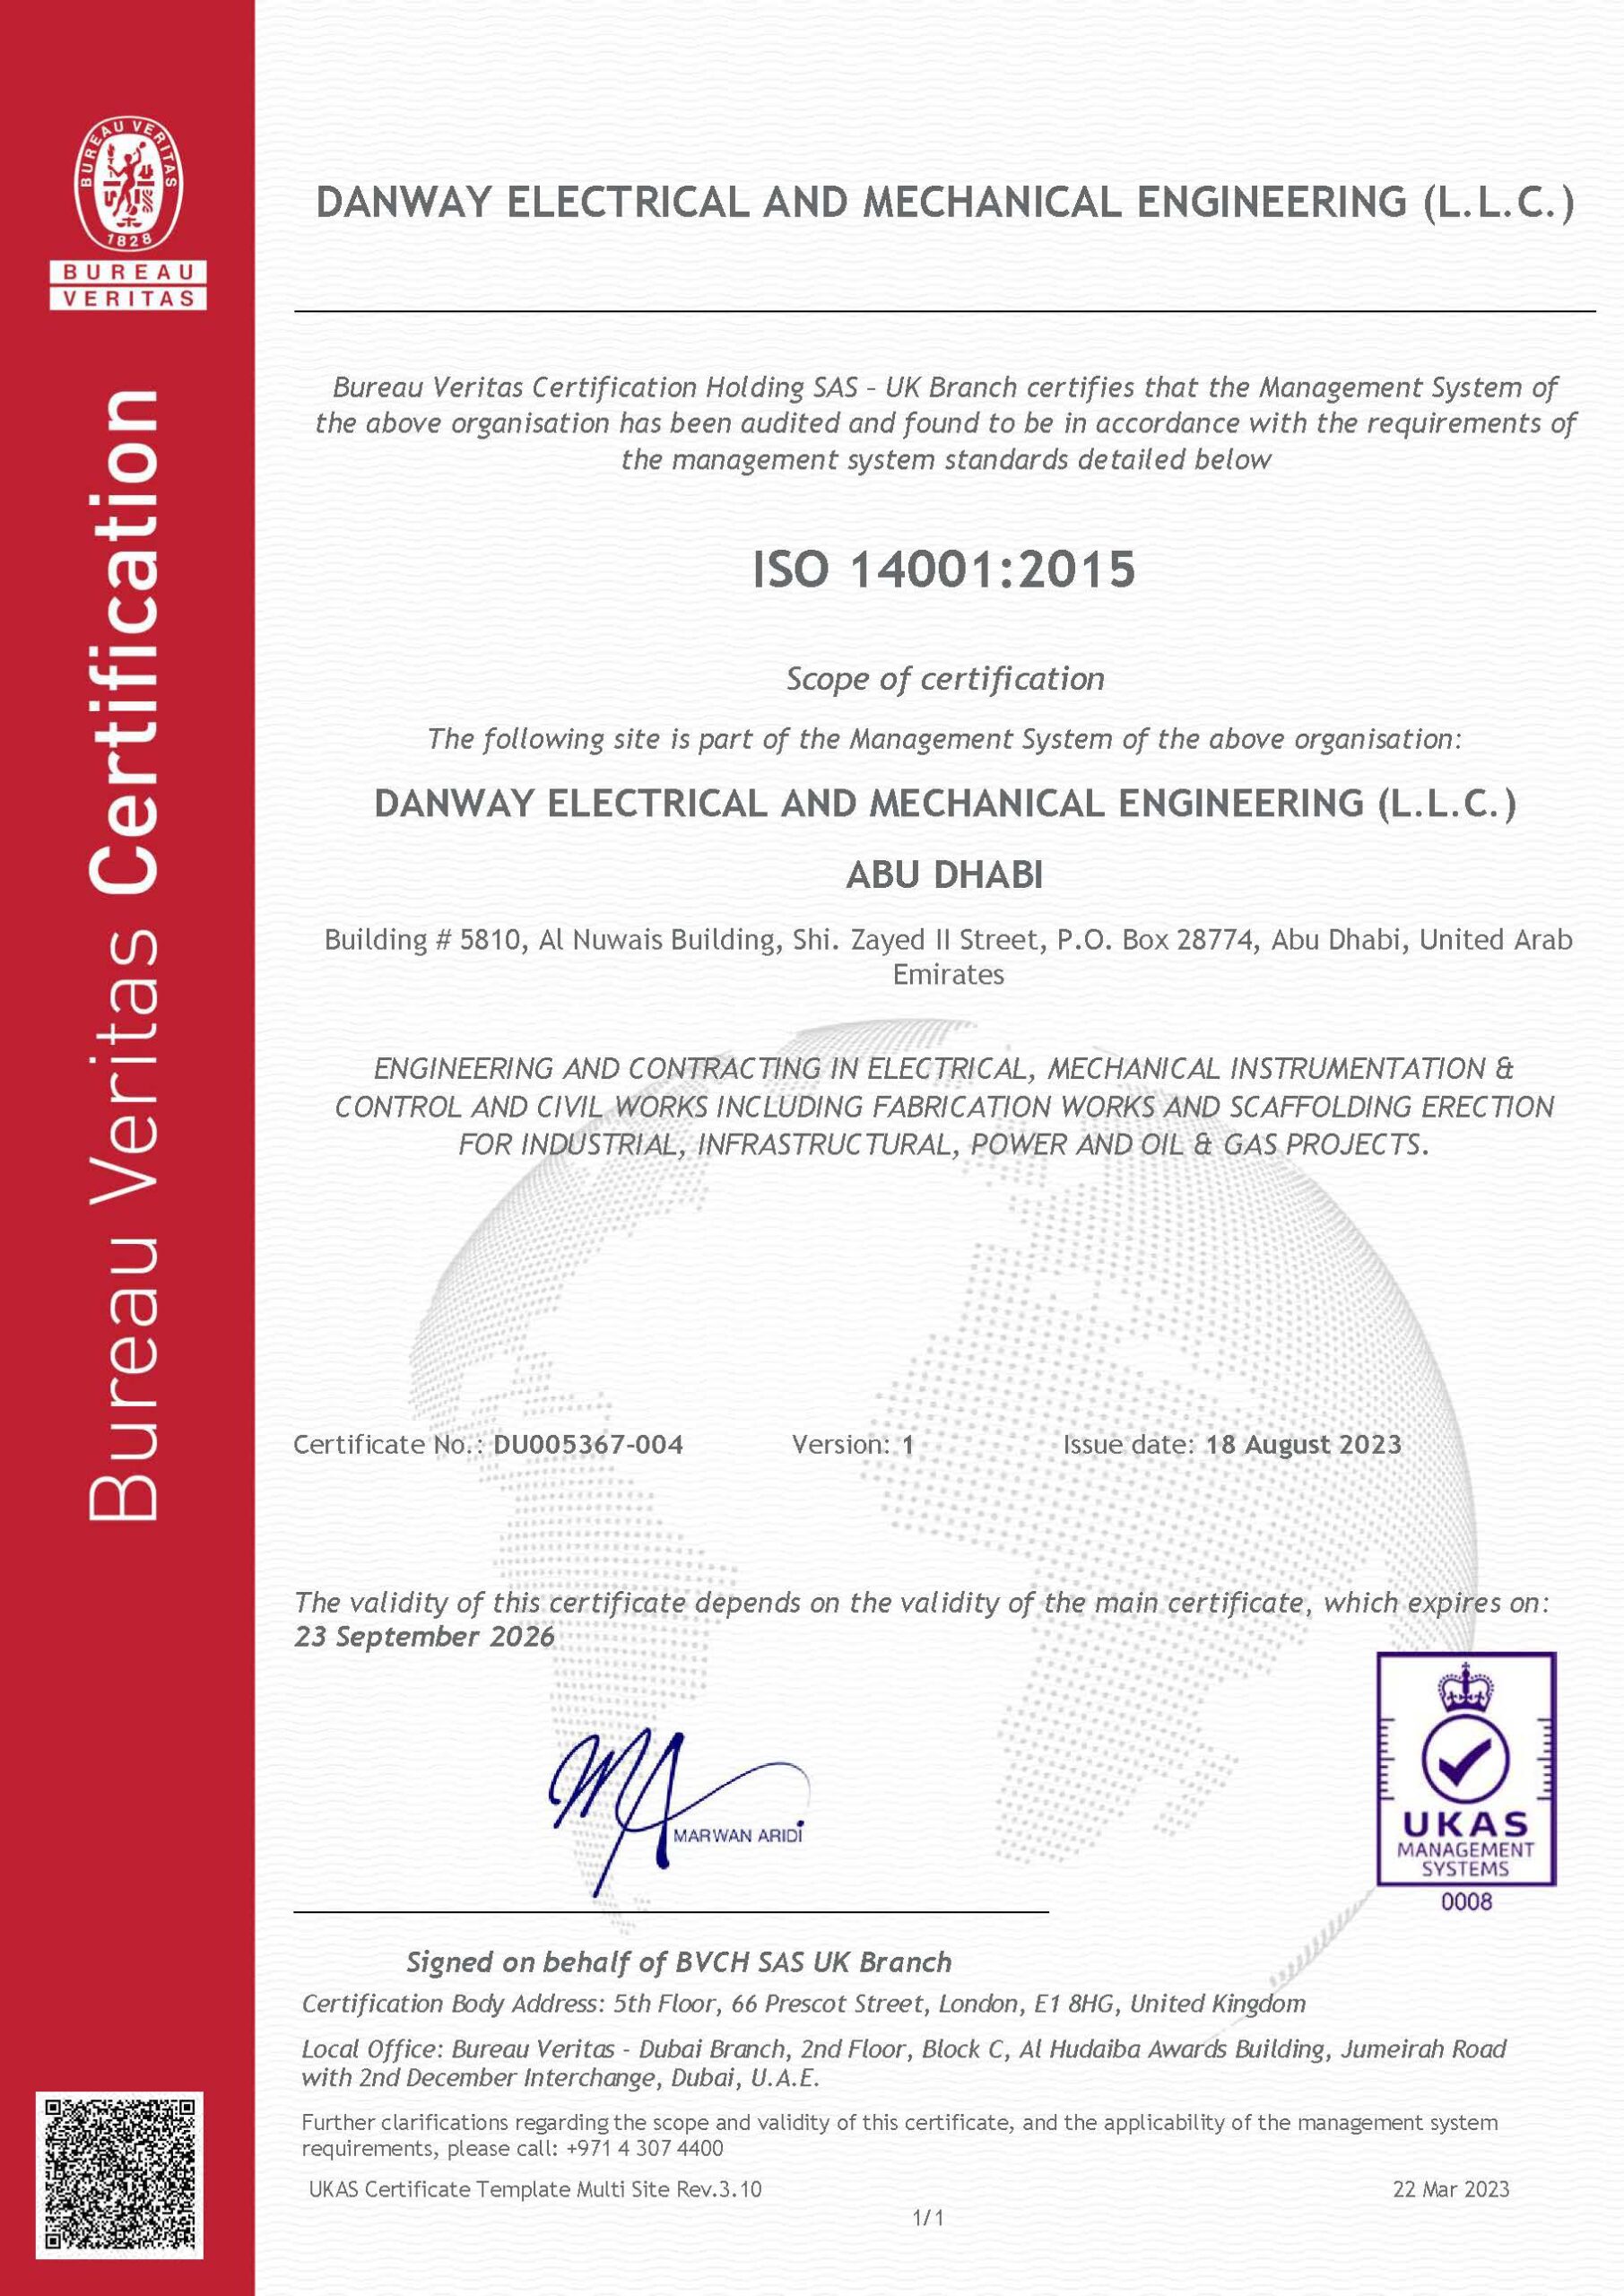 ISO14001:2015 Danway EME, Abu Dhabi